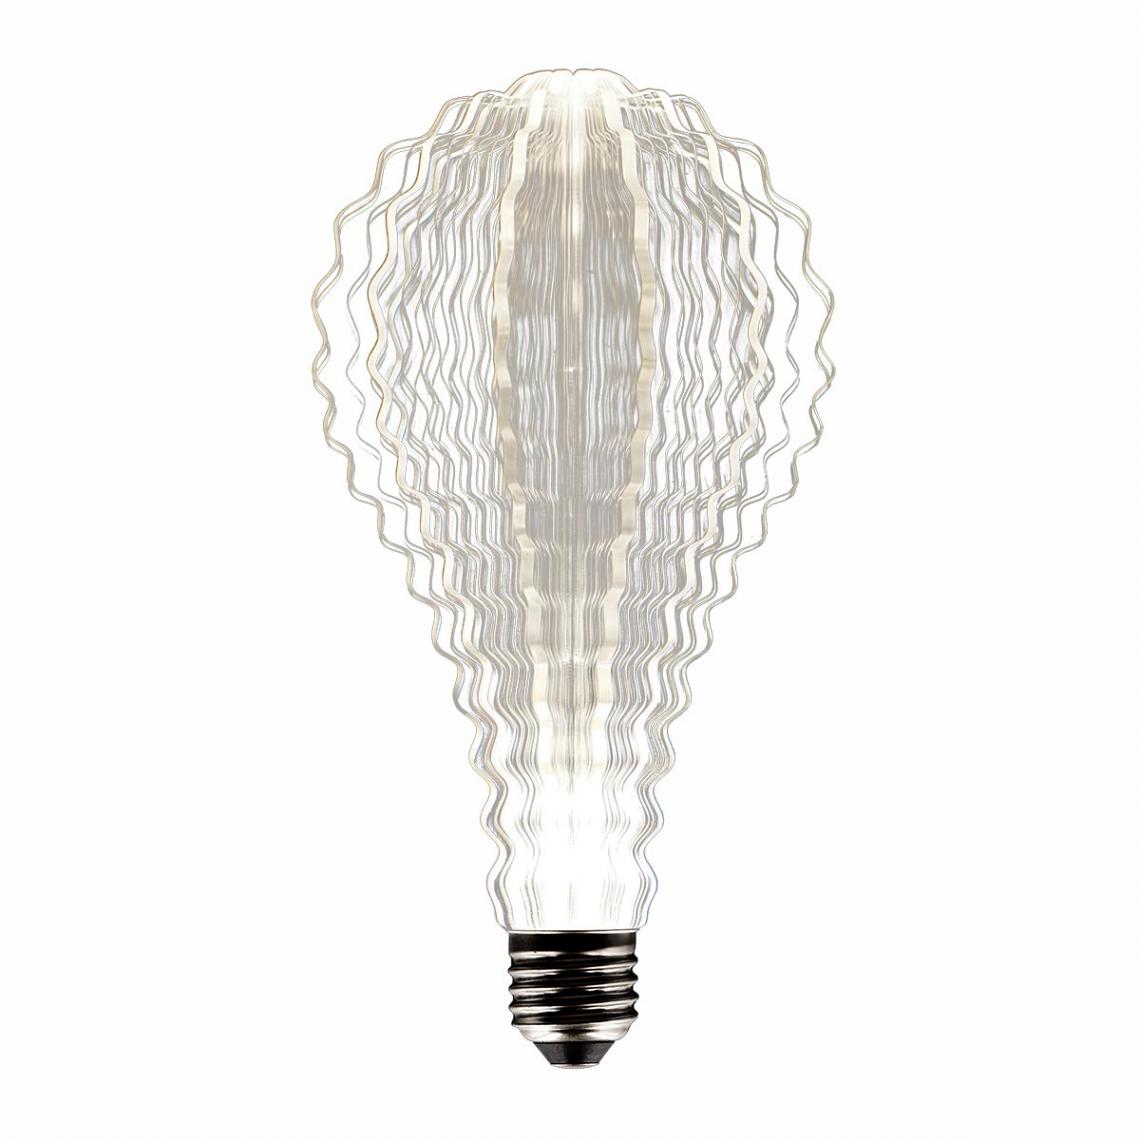 In The Loop - Ampoule LED décorative SWEET WAVY Transparent Aluminium E27 - Ampoules LED